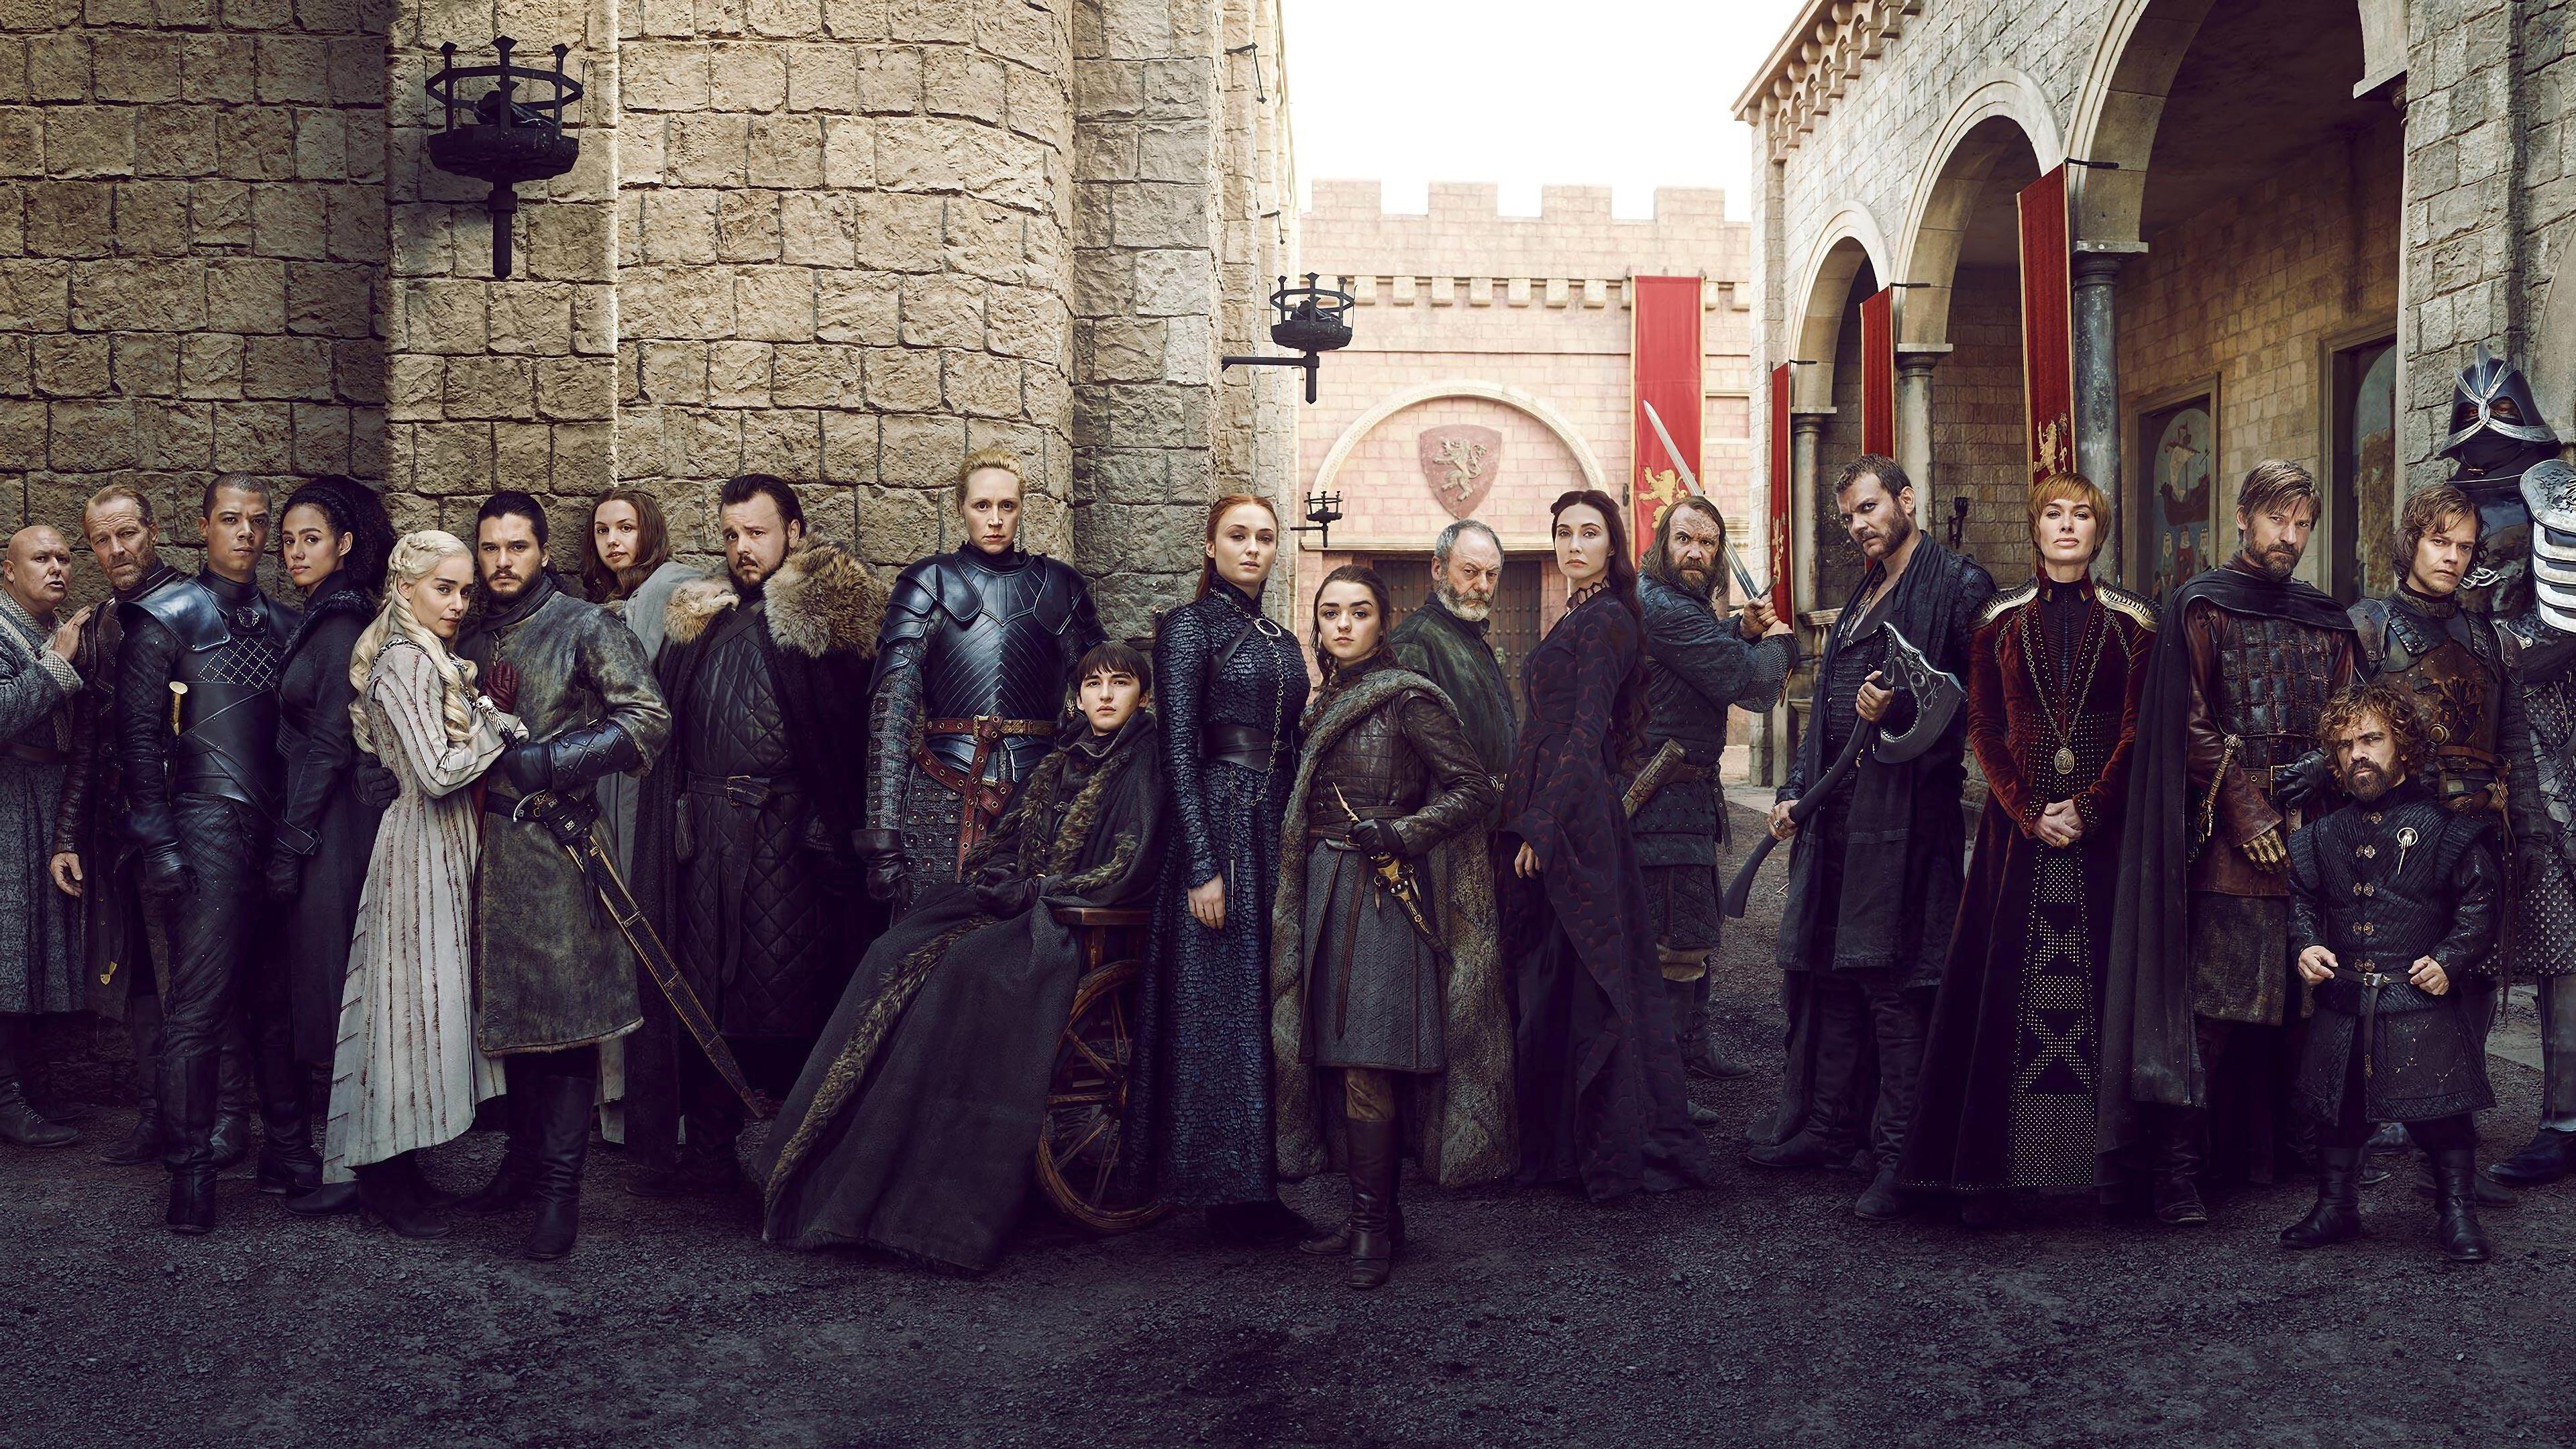 SPOILERS 4K Wallpaper: Cast of Game of Thrones: gameofthrones